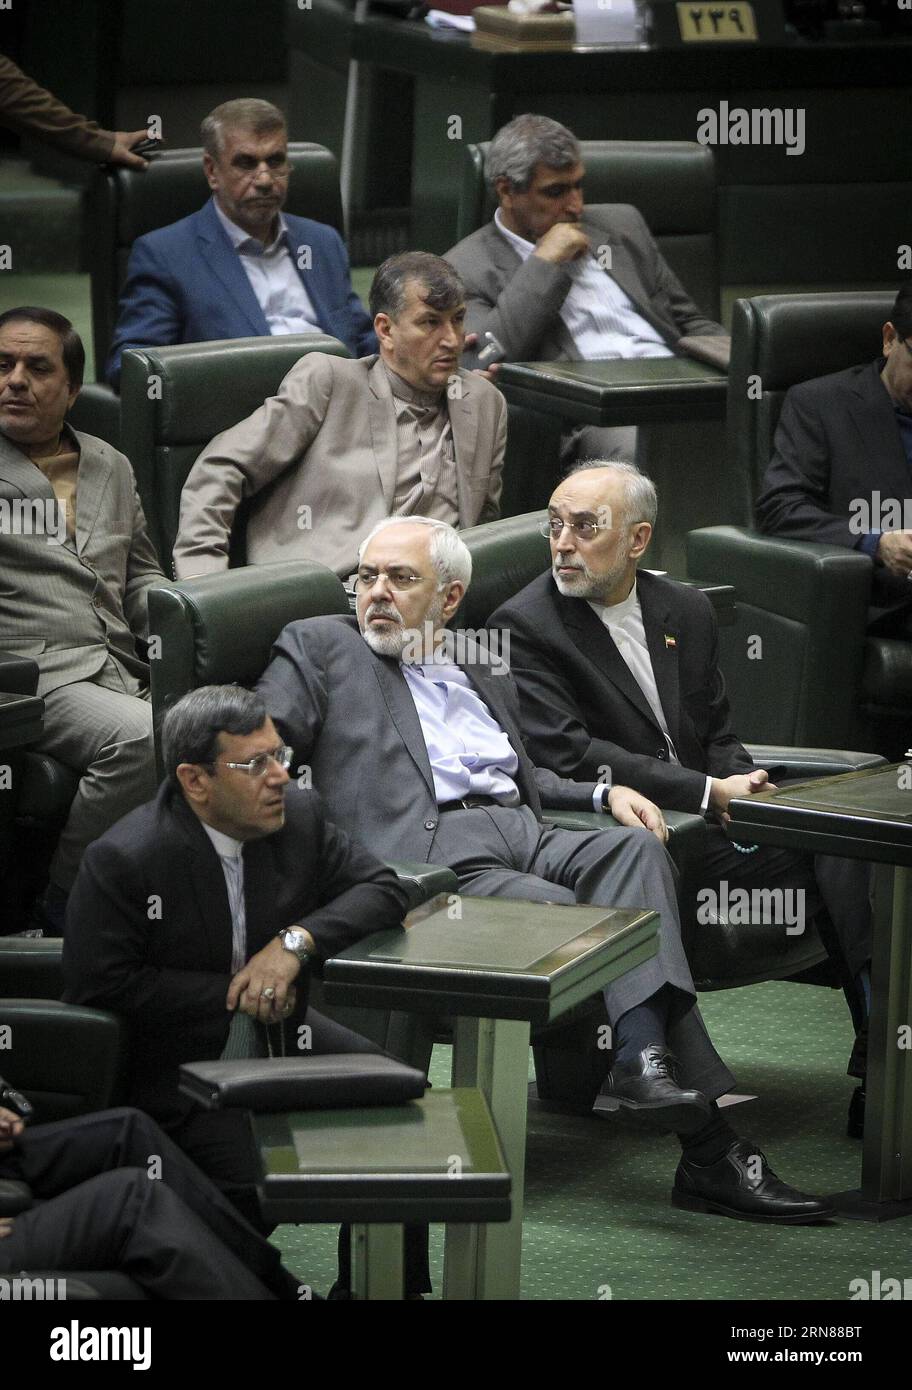 151011 -- TÉHÉRAN, le 11 octobre 2015 -- le ministre iranien des Affaires étrangères Mohammad-Javad Zarif C et le chef de l'Organisation iranienne de l'énergie atomique, Ali-Akbar Salehi R réagissent au Majlis iranien à Téhéran, Iran, le 11 octobre 2015. Le Parlement iranien a approuvé dimanche les grandes lignes d'un plan qui oblige l'administration du président Hassan Rouhani à prendre des mesures proportionnelles dans la mise en œuvre de l'accord nucléaire conclu entre l'Iran et les puissances mondiales en juillet 2015. IRAN-TÉHÉRAN-NUCLÉAIRE-PARLIAMNET AhmadxHalabisaz PUBLICATIONxNOTxINxCHN Banque D'Images